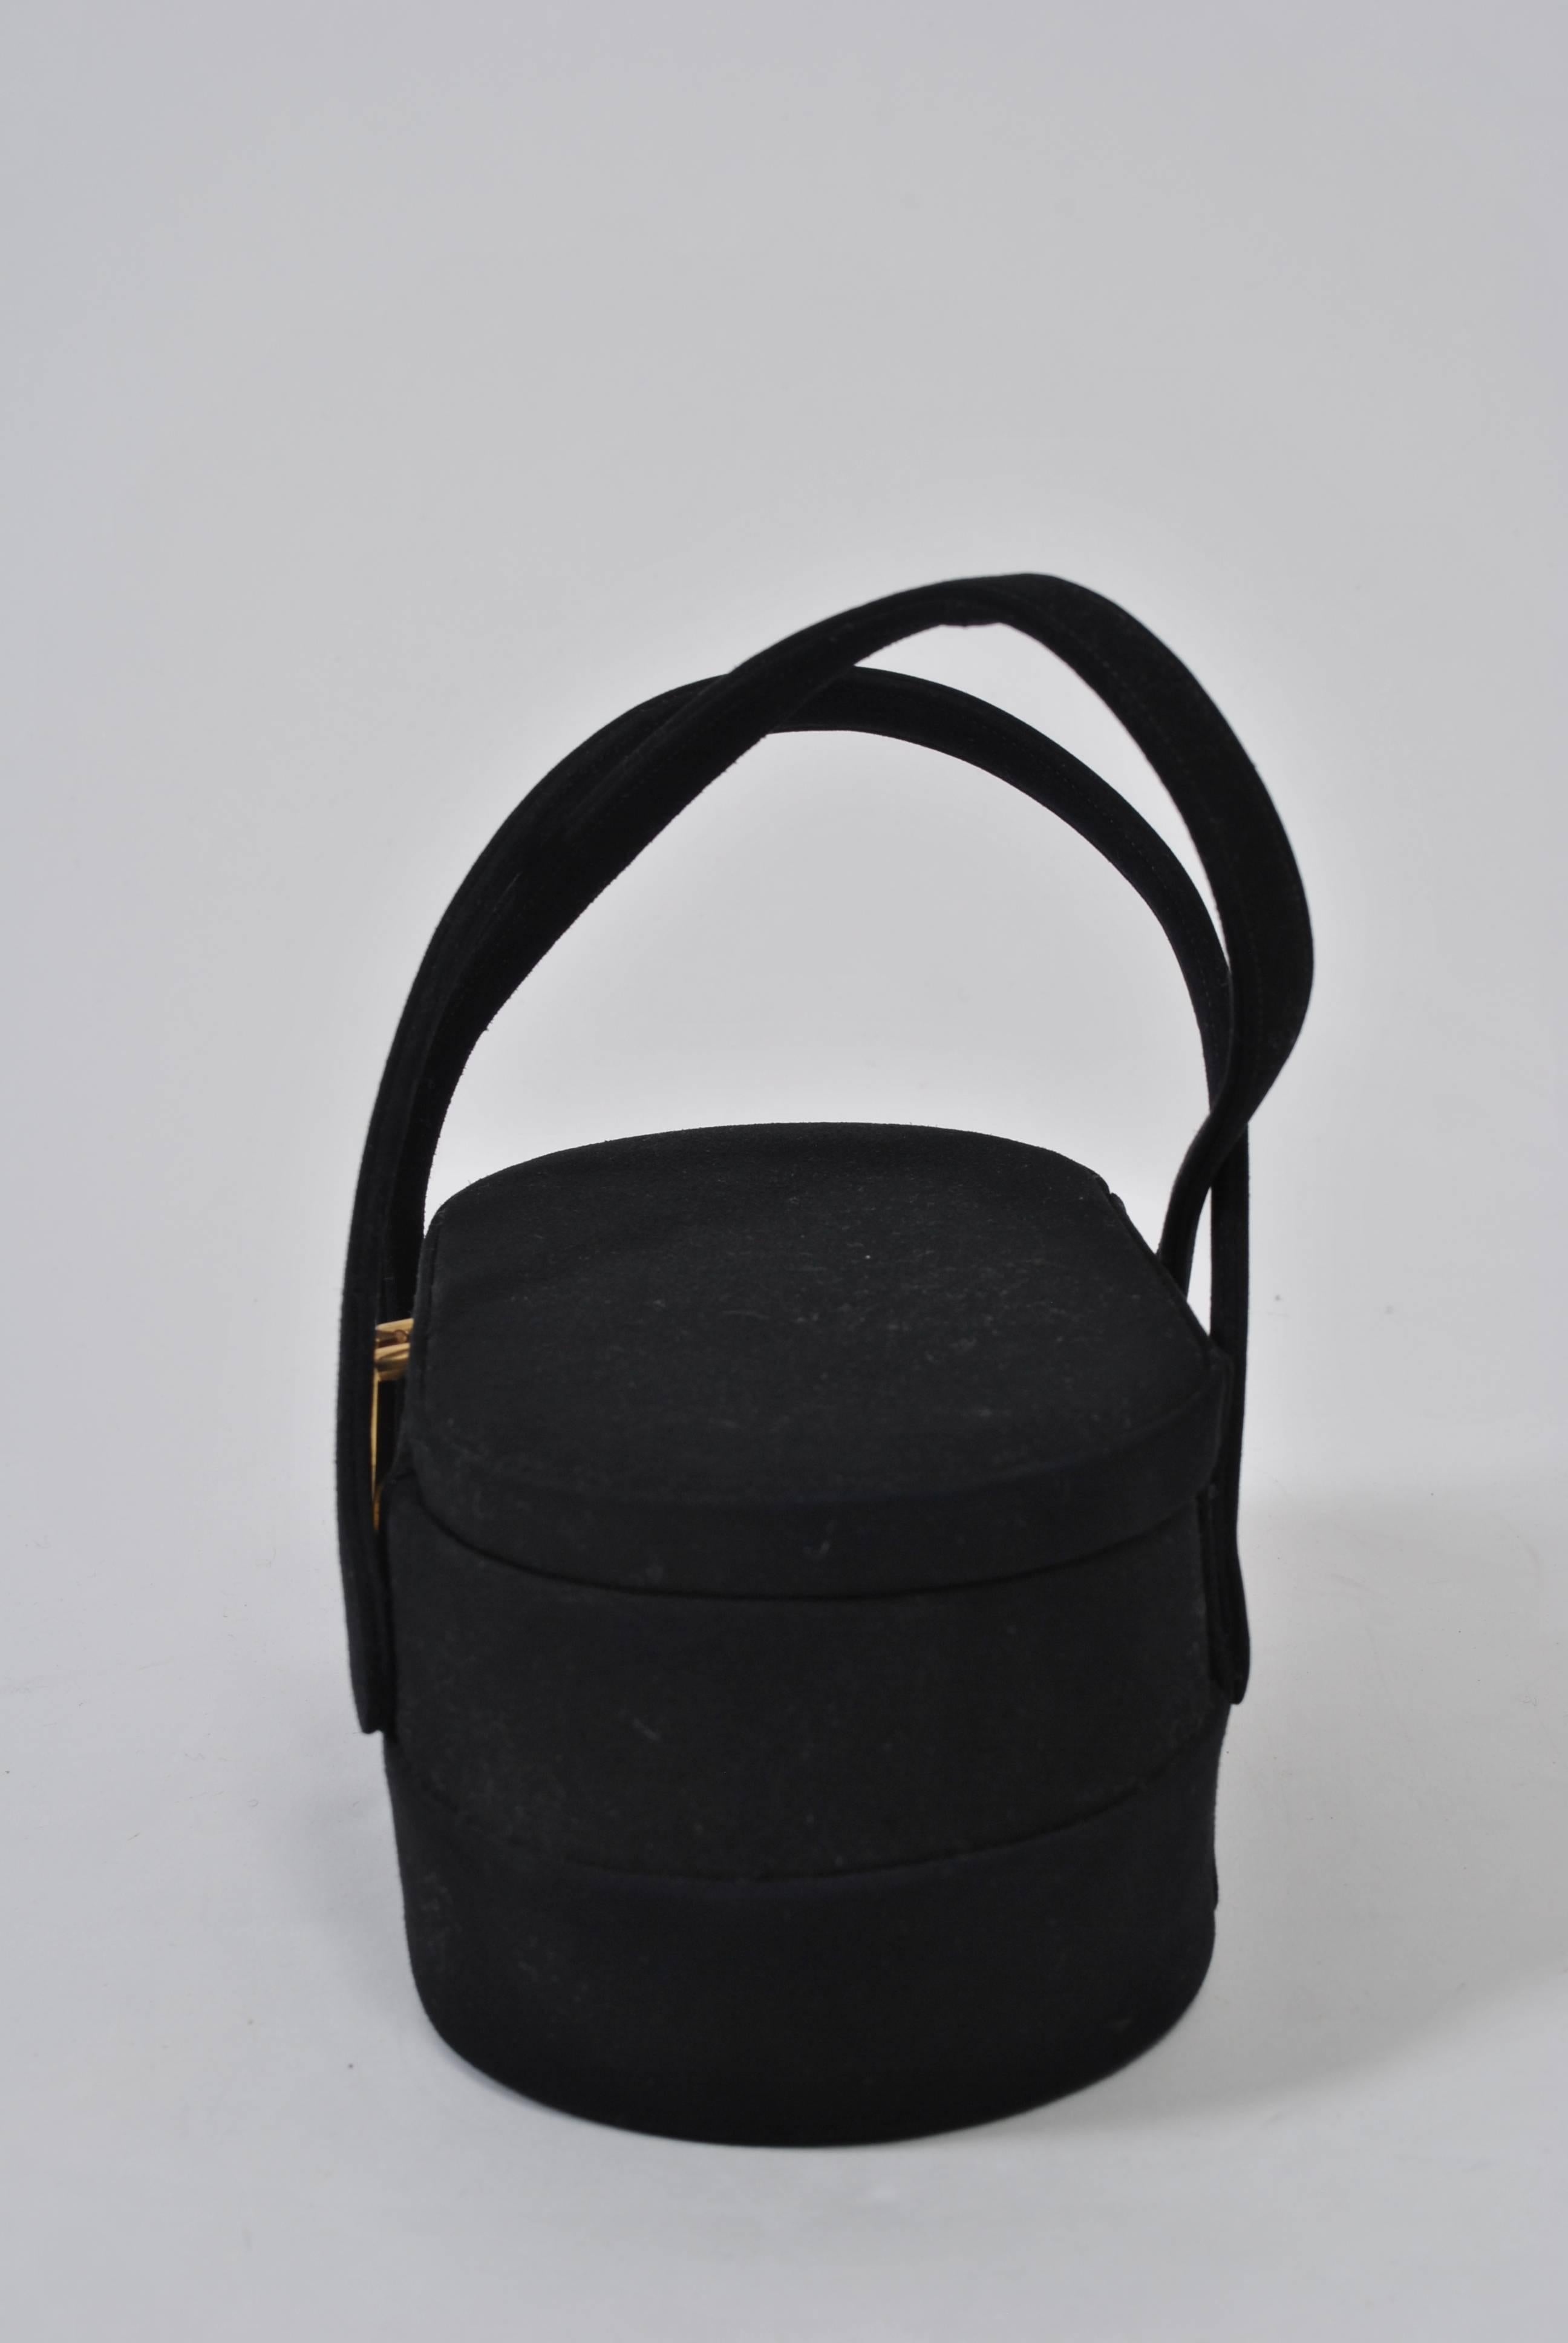 In den 1950er und 60er Jahren waren kastenförmige Handtaschen sehr beliebt, und ihr einzigartiges Design ist in diesem Beispiel von Coblentz deutlich zu erkennen. Die Tasche aus schwarzem Wildleder hat eine ovale Form, die an der Taille am